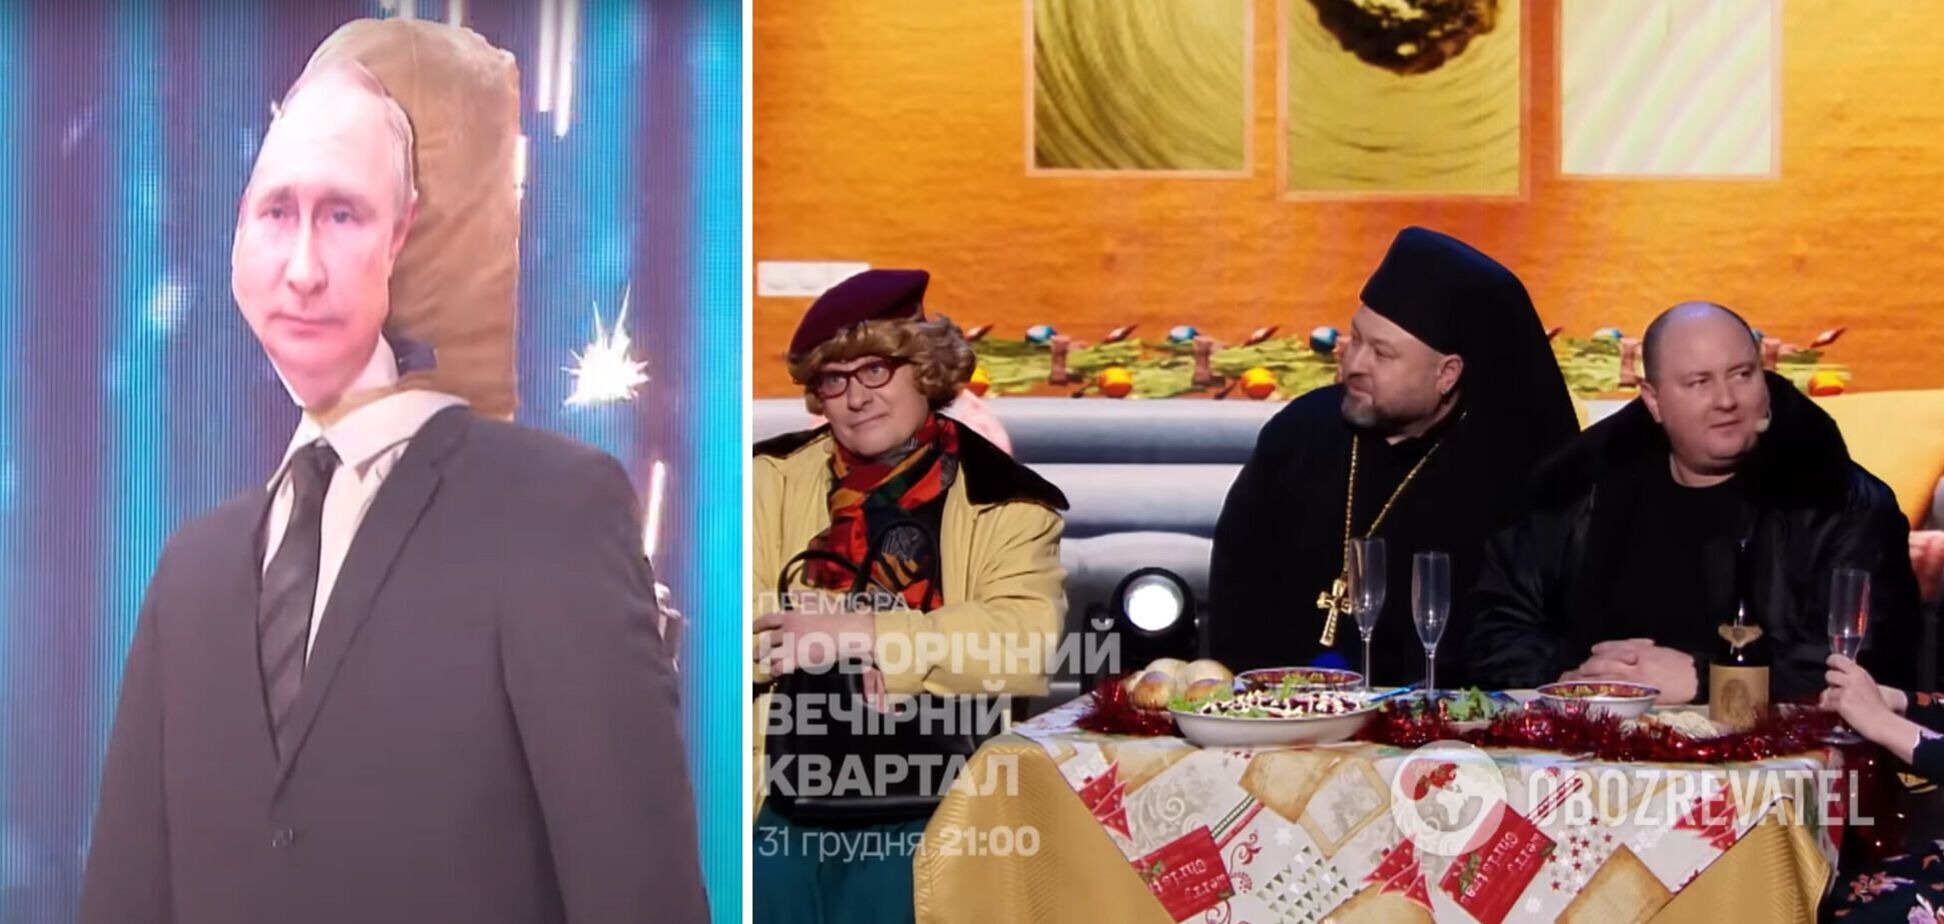 'Дизель' подожжет пугало Путина, 'Квартал' посвятит номер Буданову, а в эфире телемарафона будет концерт: что посмотреть в новогоднюю ночь